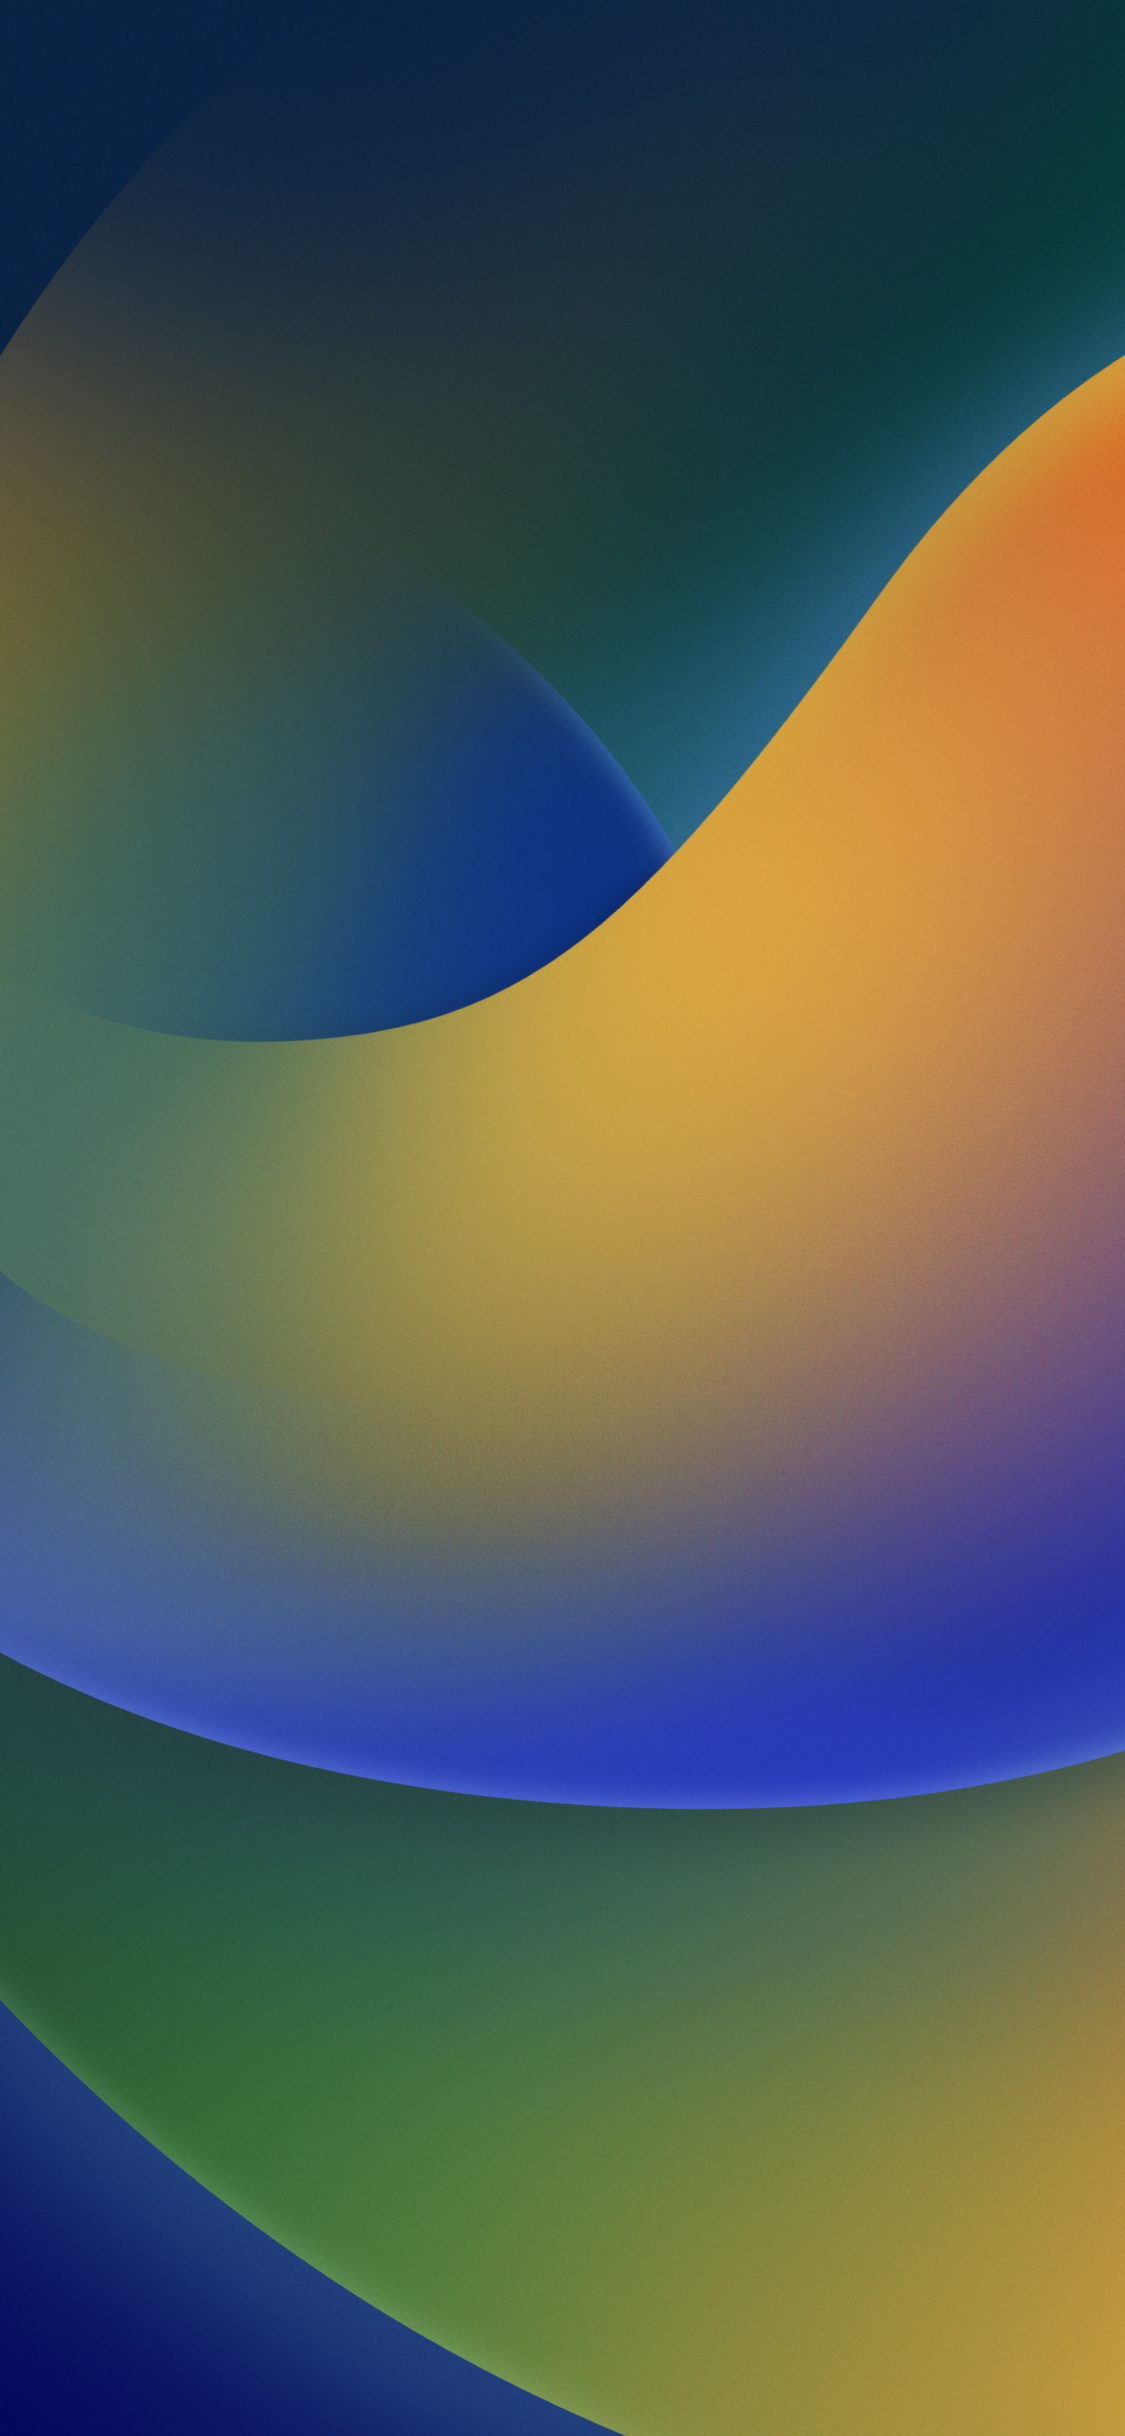 Có những hình nền đổi màu theo thời gian trong iOS 16 sẽ khiến bạn say mê từ cái nhìn đầu tiên. Bạn muốn tận hưởng trải nghiệm đắm chìm màu sắc cùng bức hình nền này không?